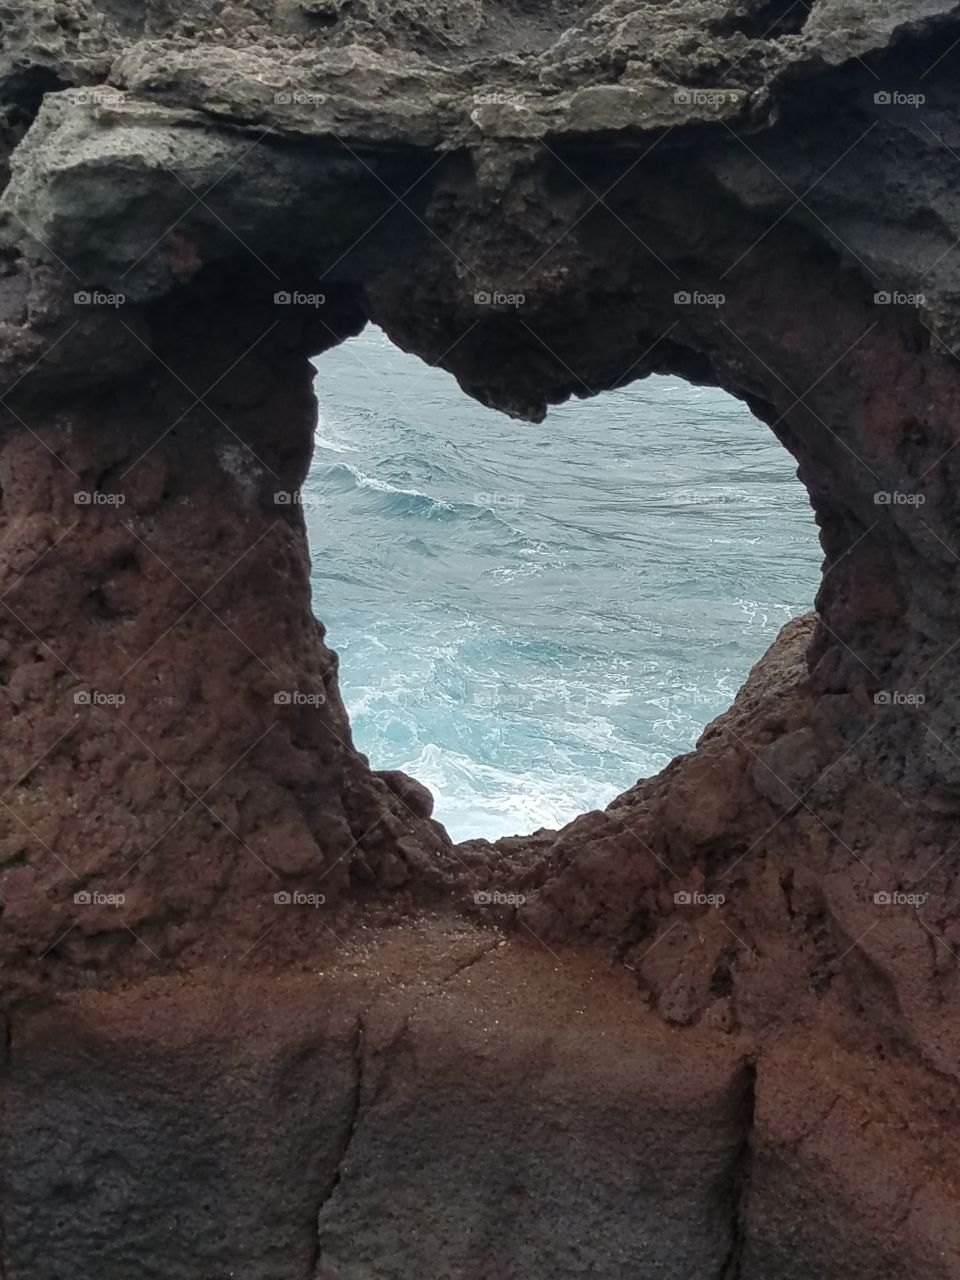 Maui Blow Hole